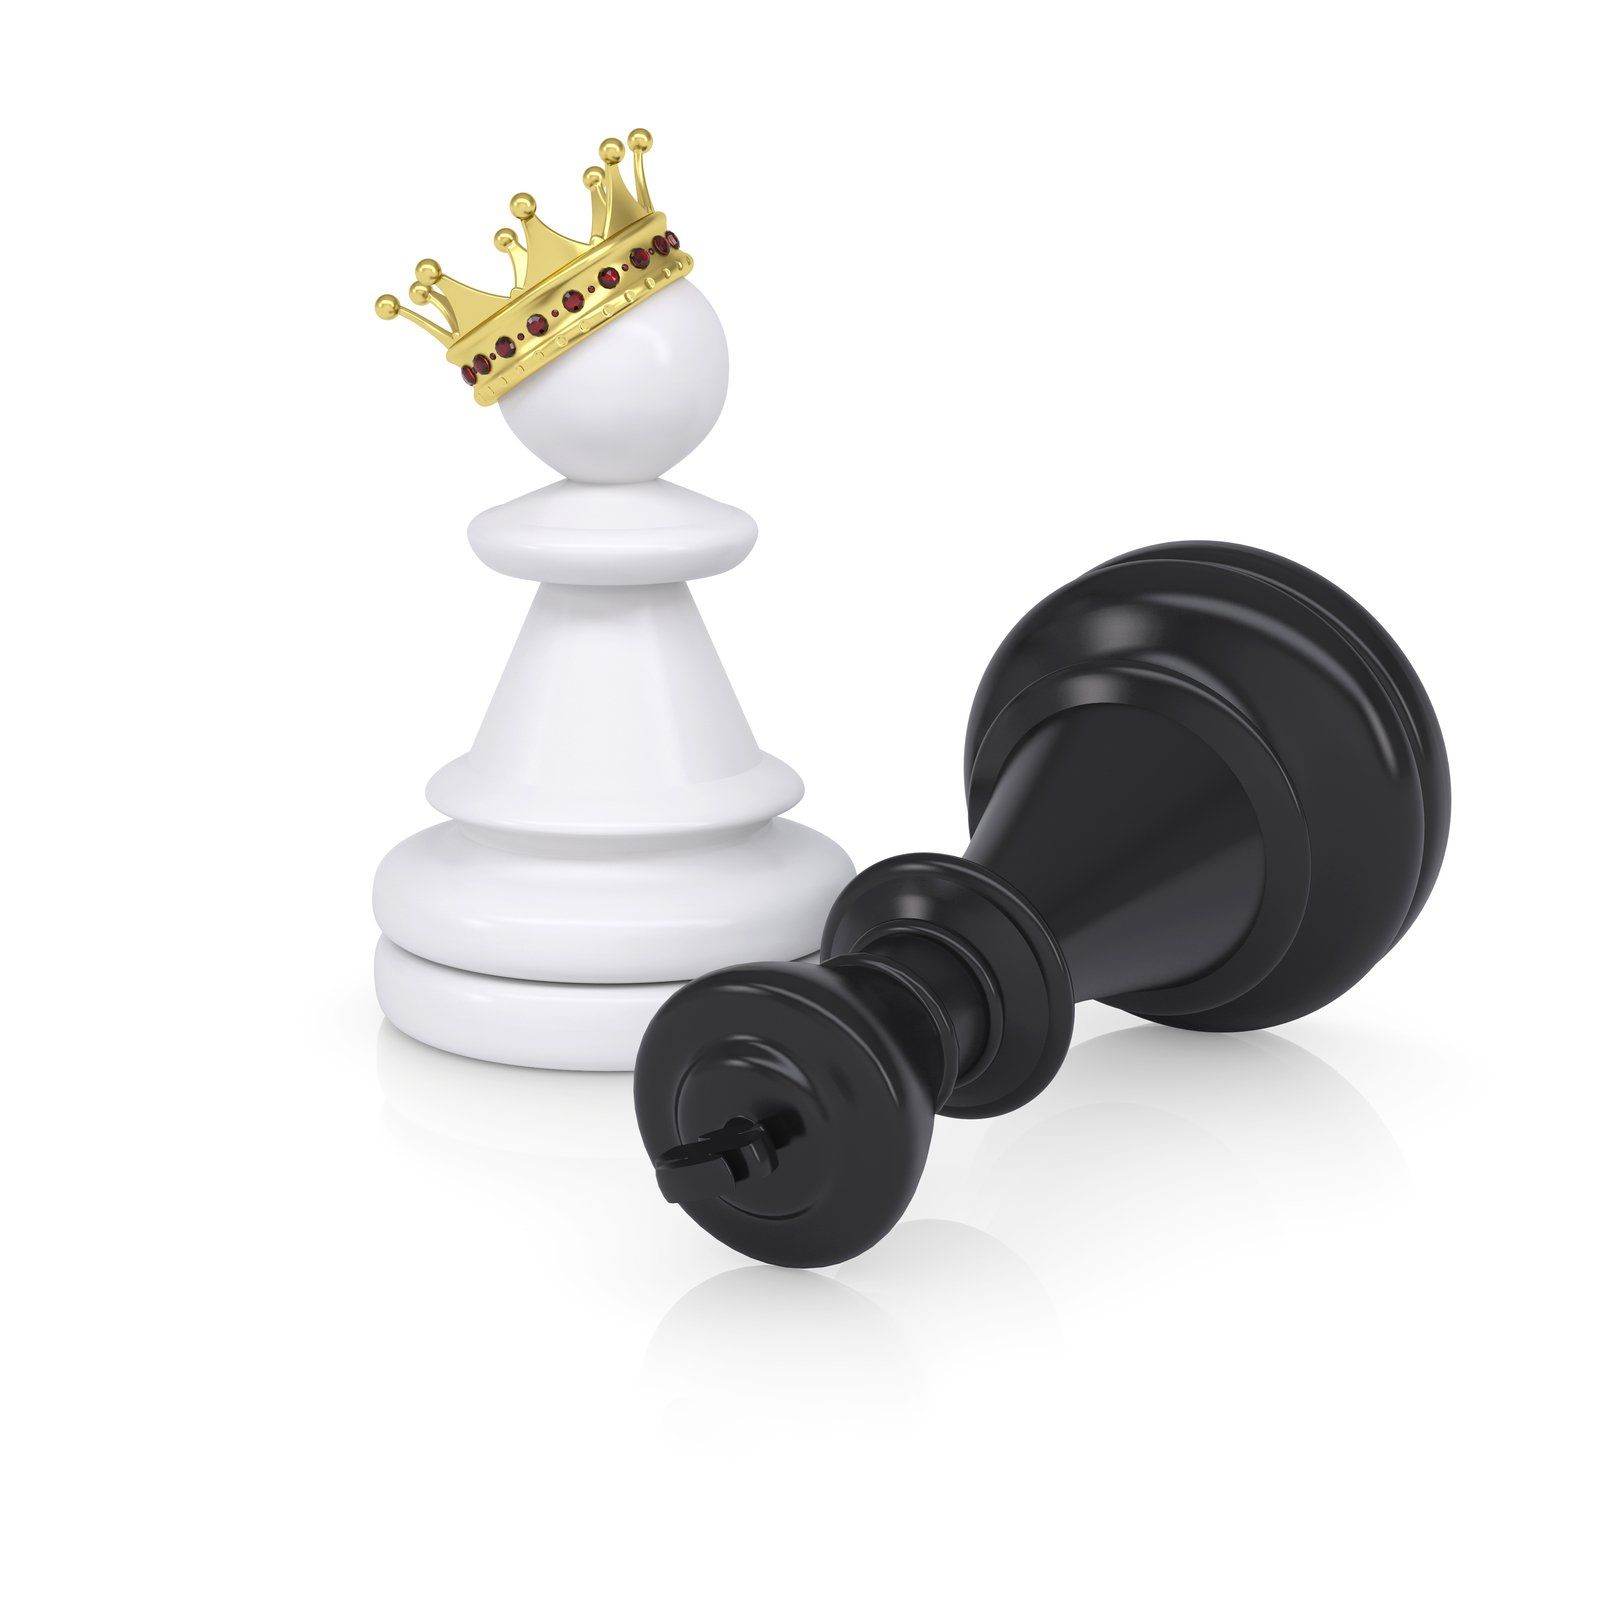 Bild zur Illustration reicher Menschen mit Schachfiguren